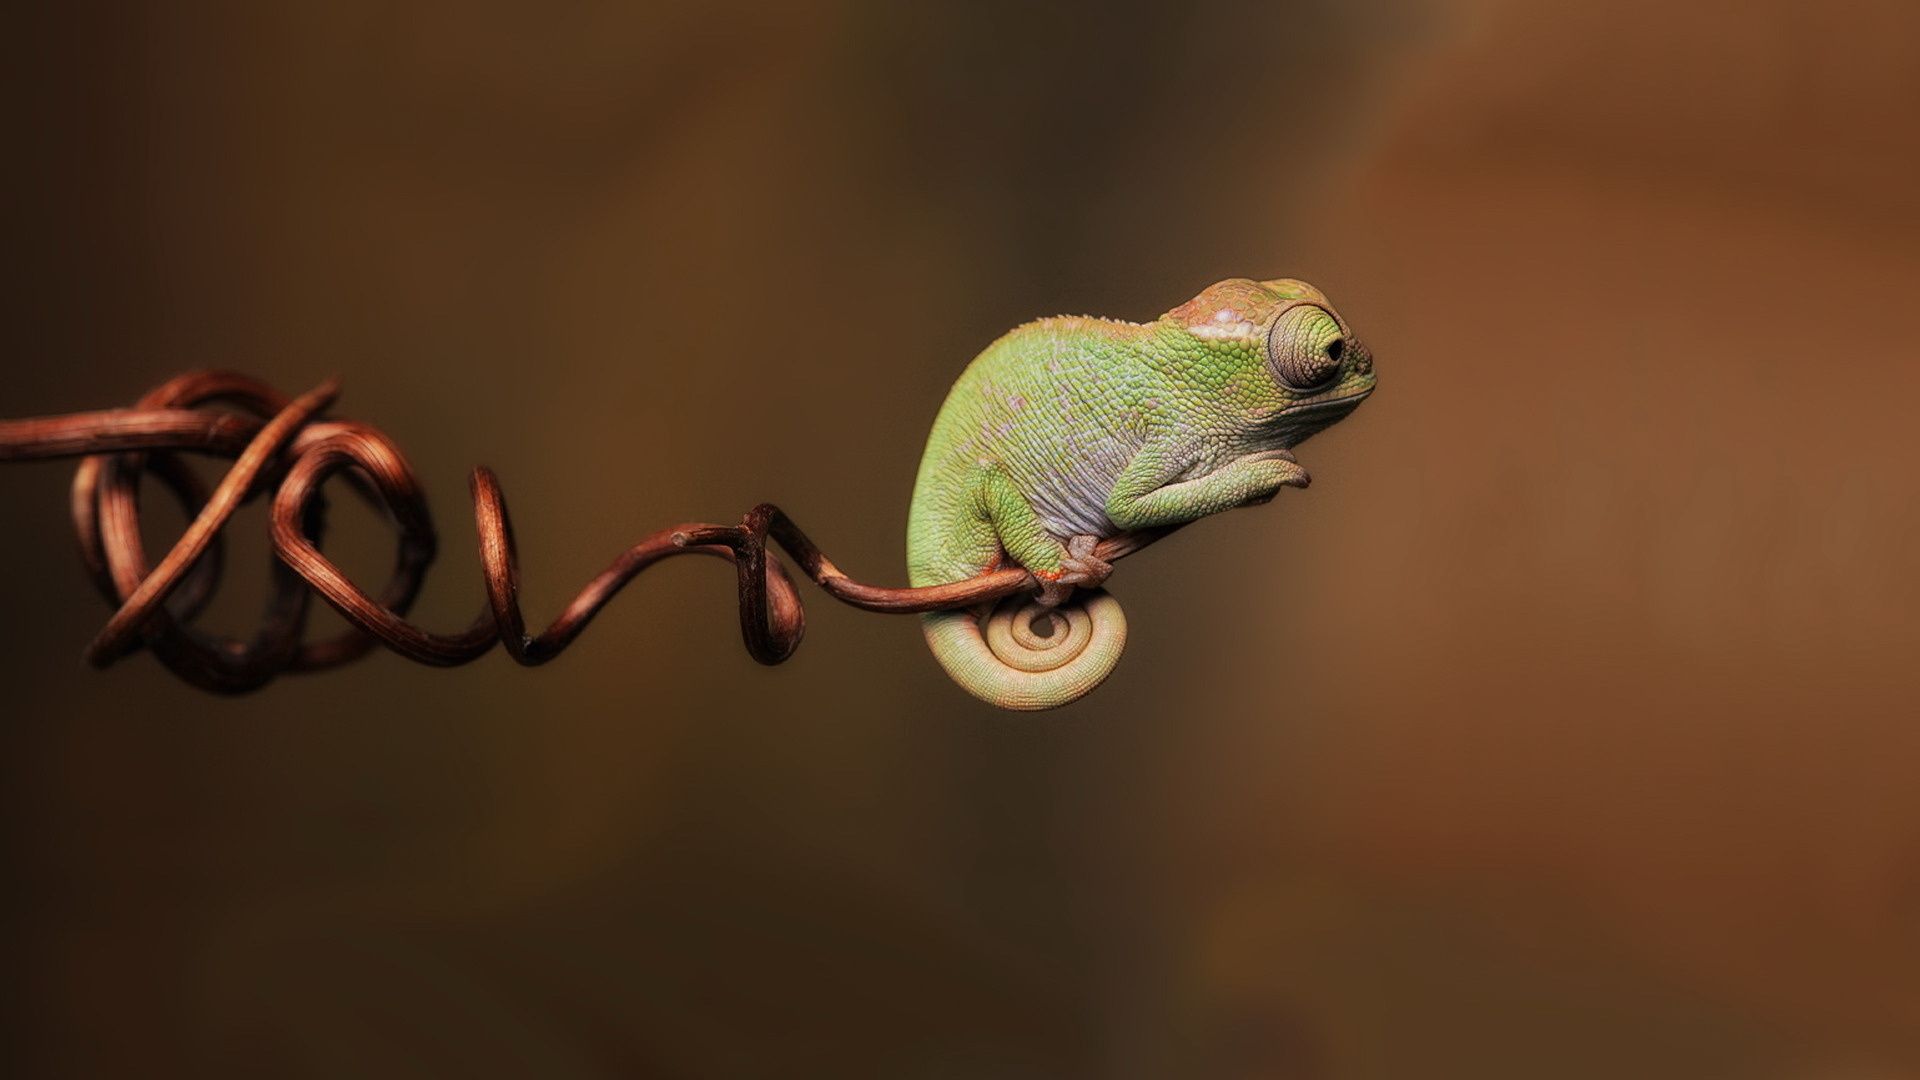 Galería de fondos gecko